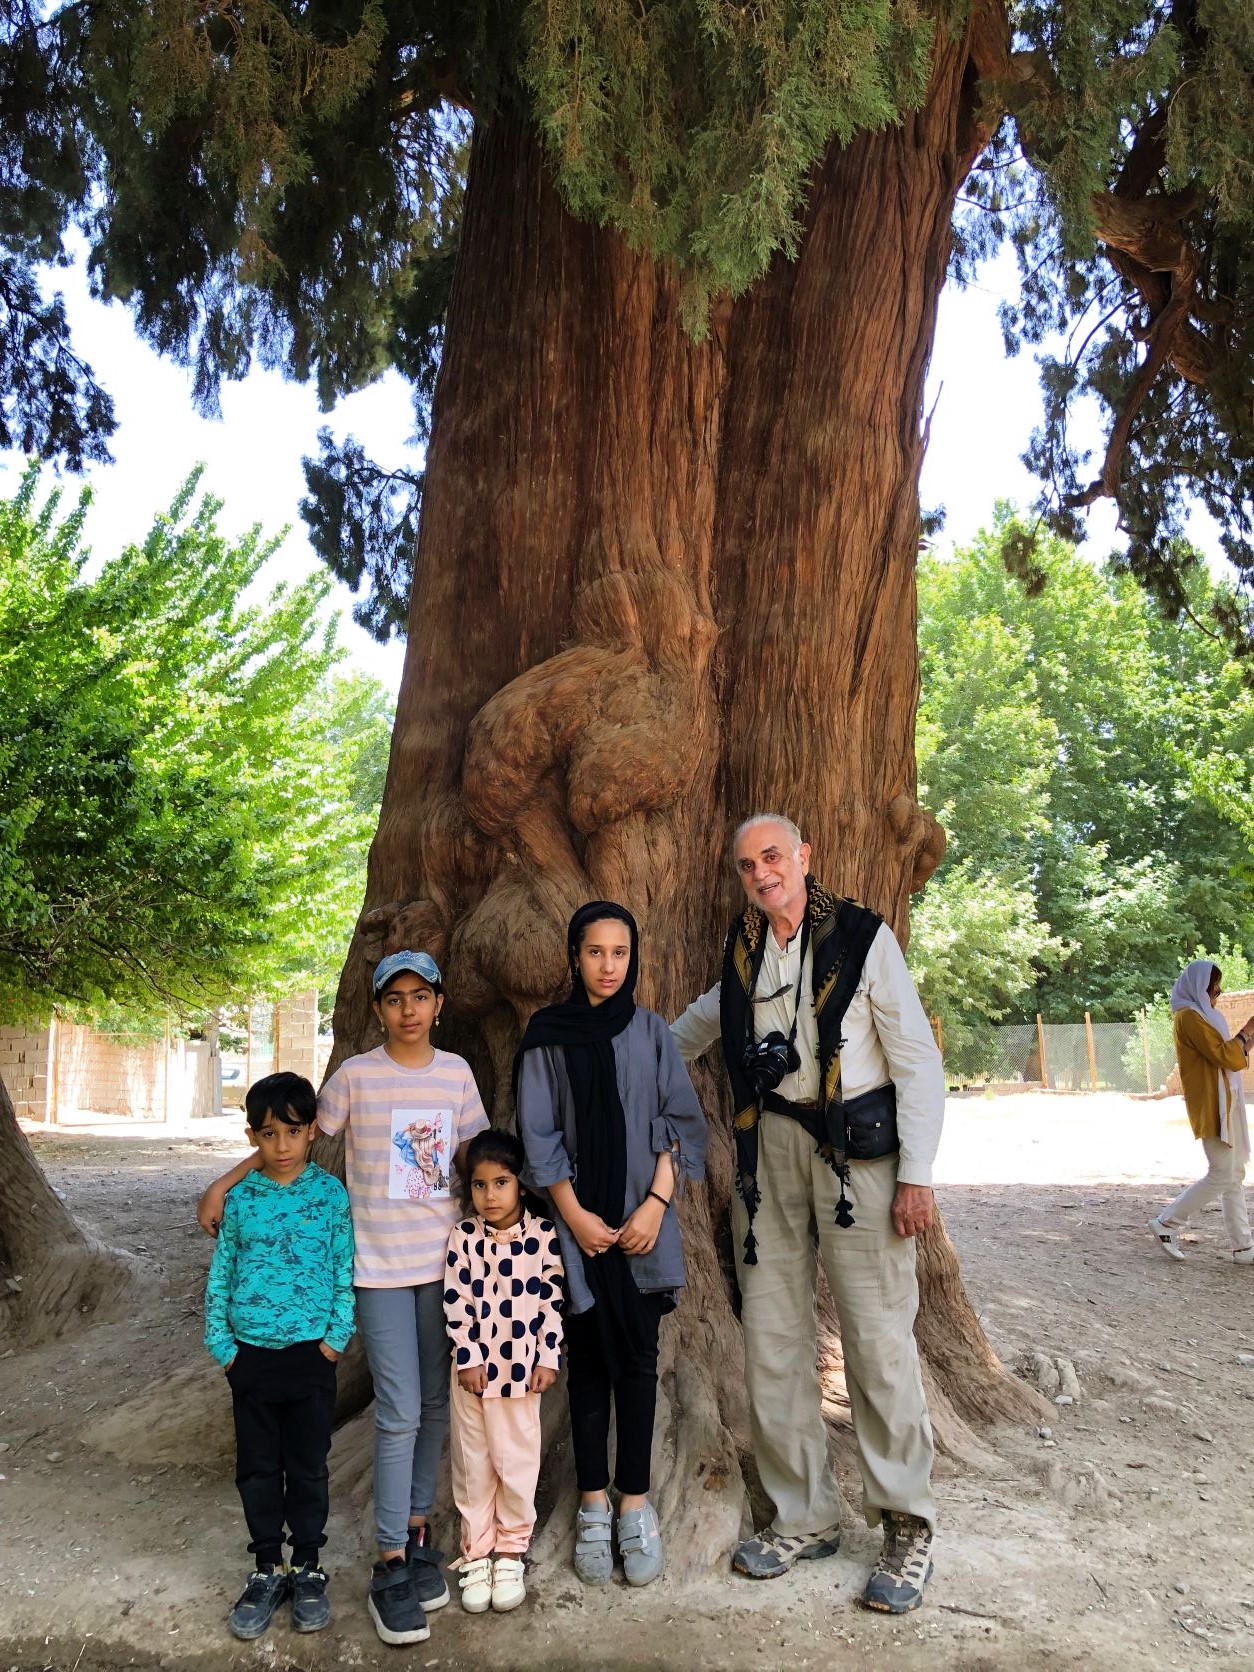 Twin Cedar Trees, Sirch Village, Kerman Province, Iran